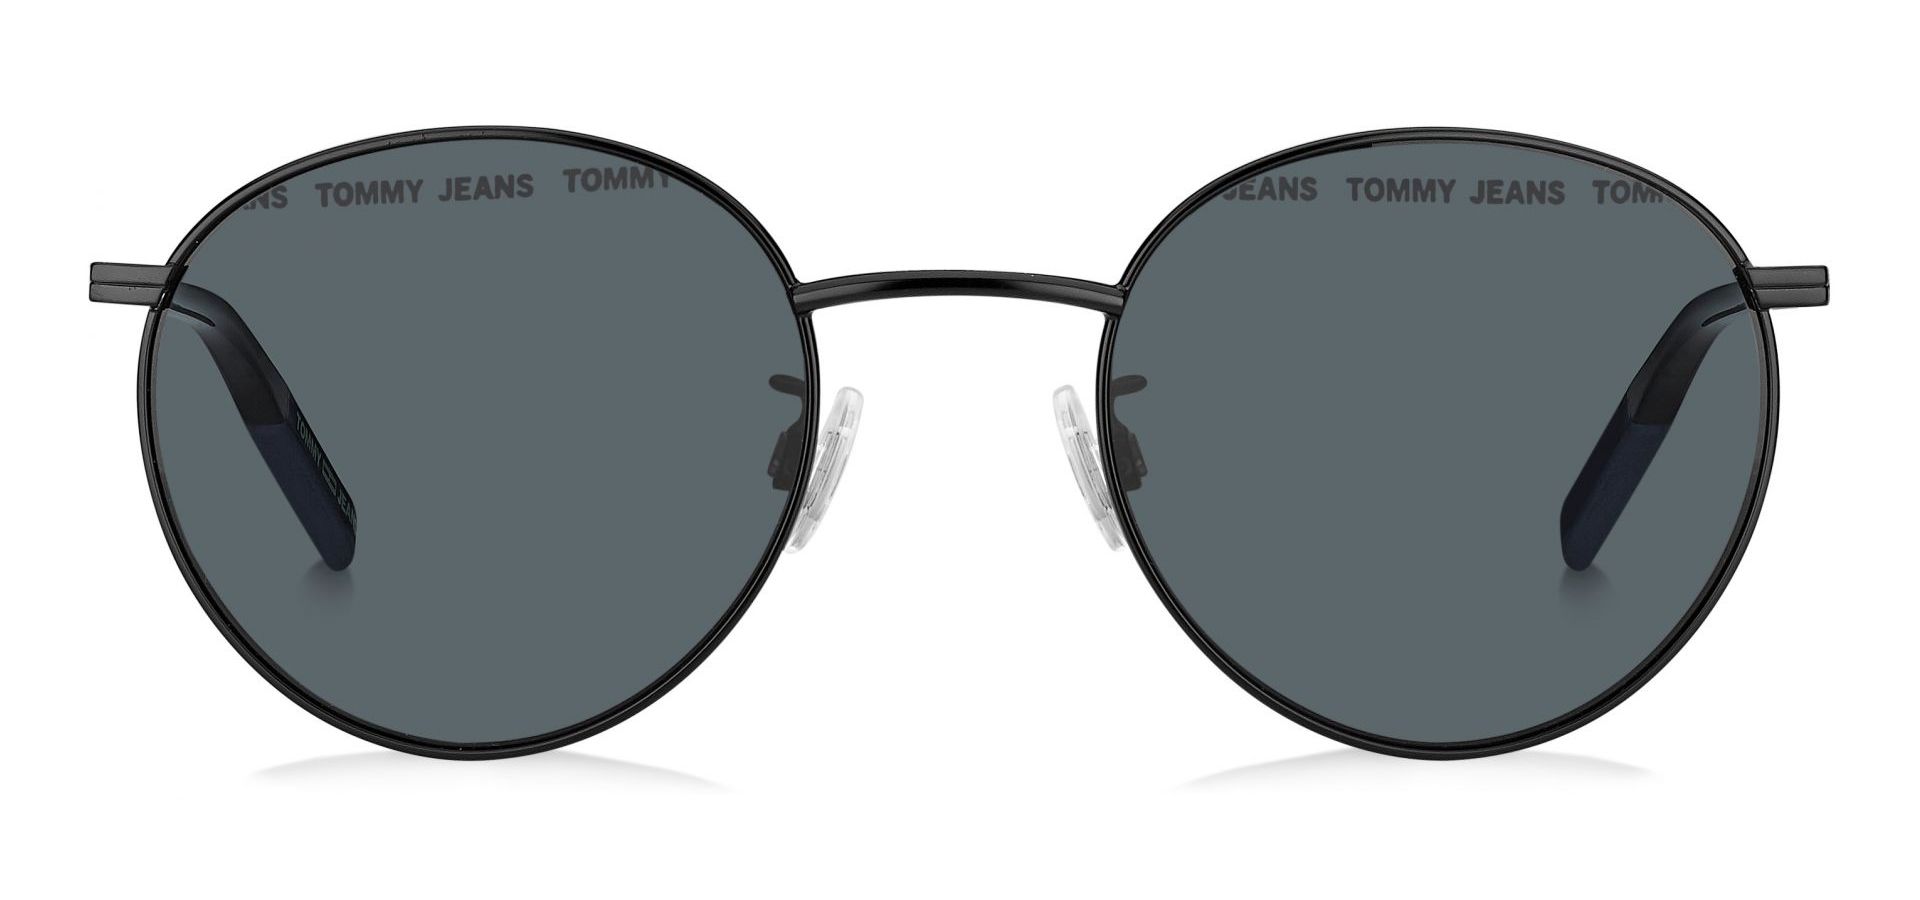 Sunčane naočale TOMMY JEANS TOMMY HILFIGER 0030: Boja: Black, Veličina: 51-15-145, Spol: unisex, Materijal: metal